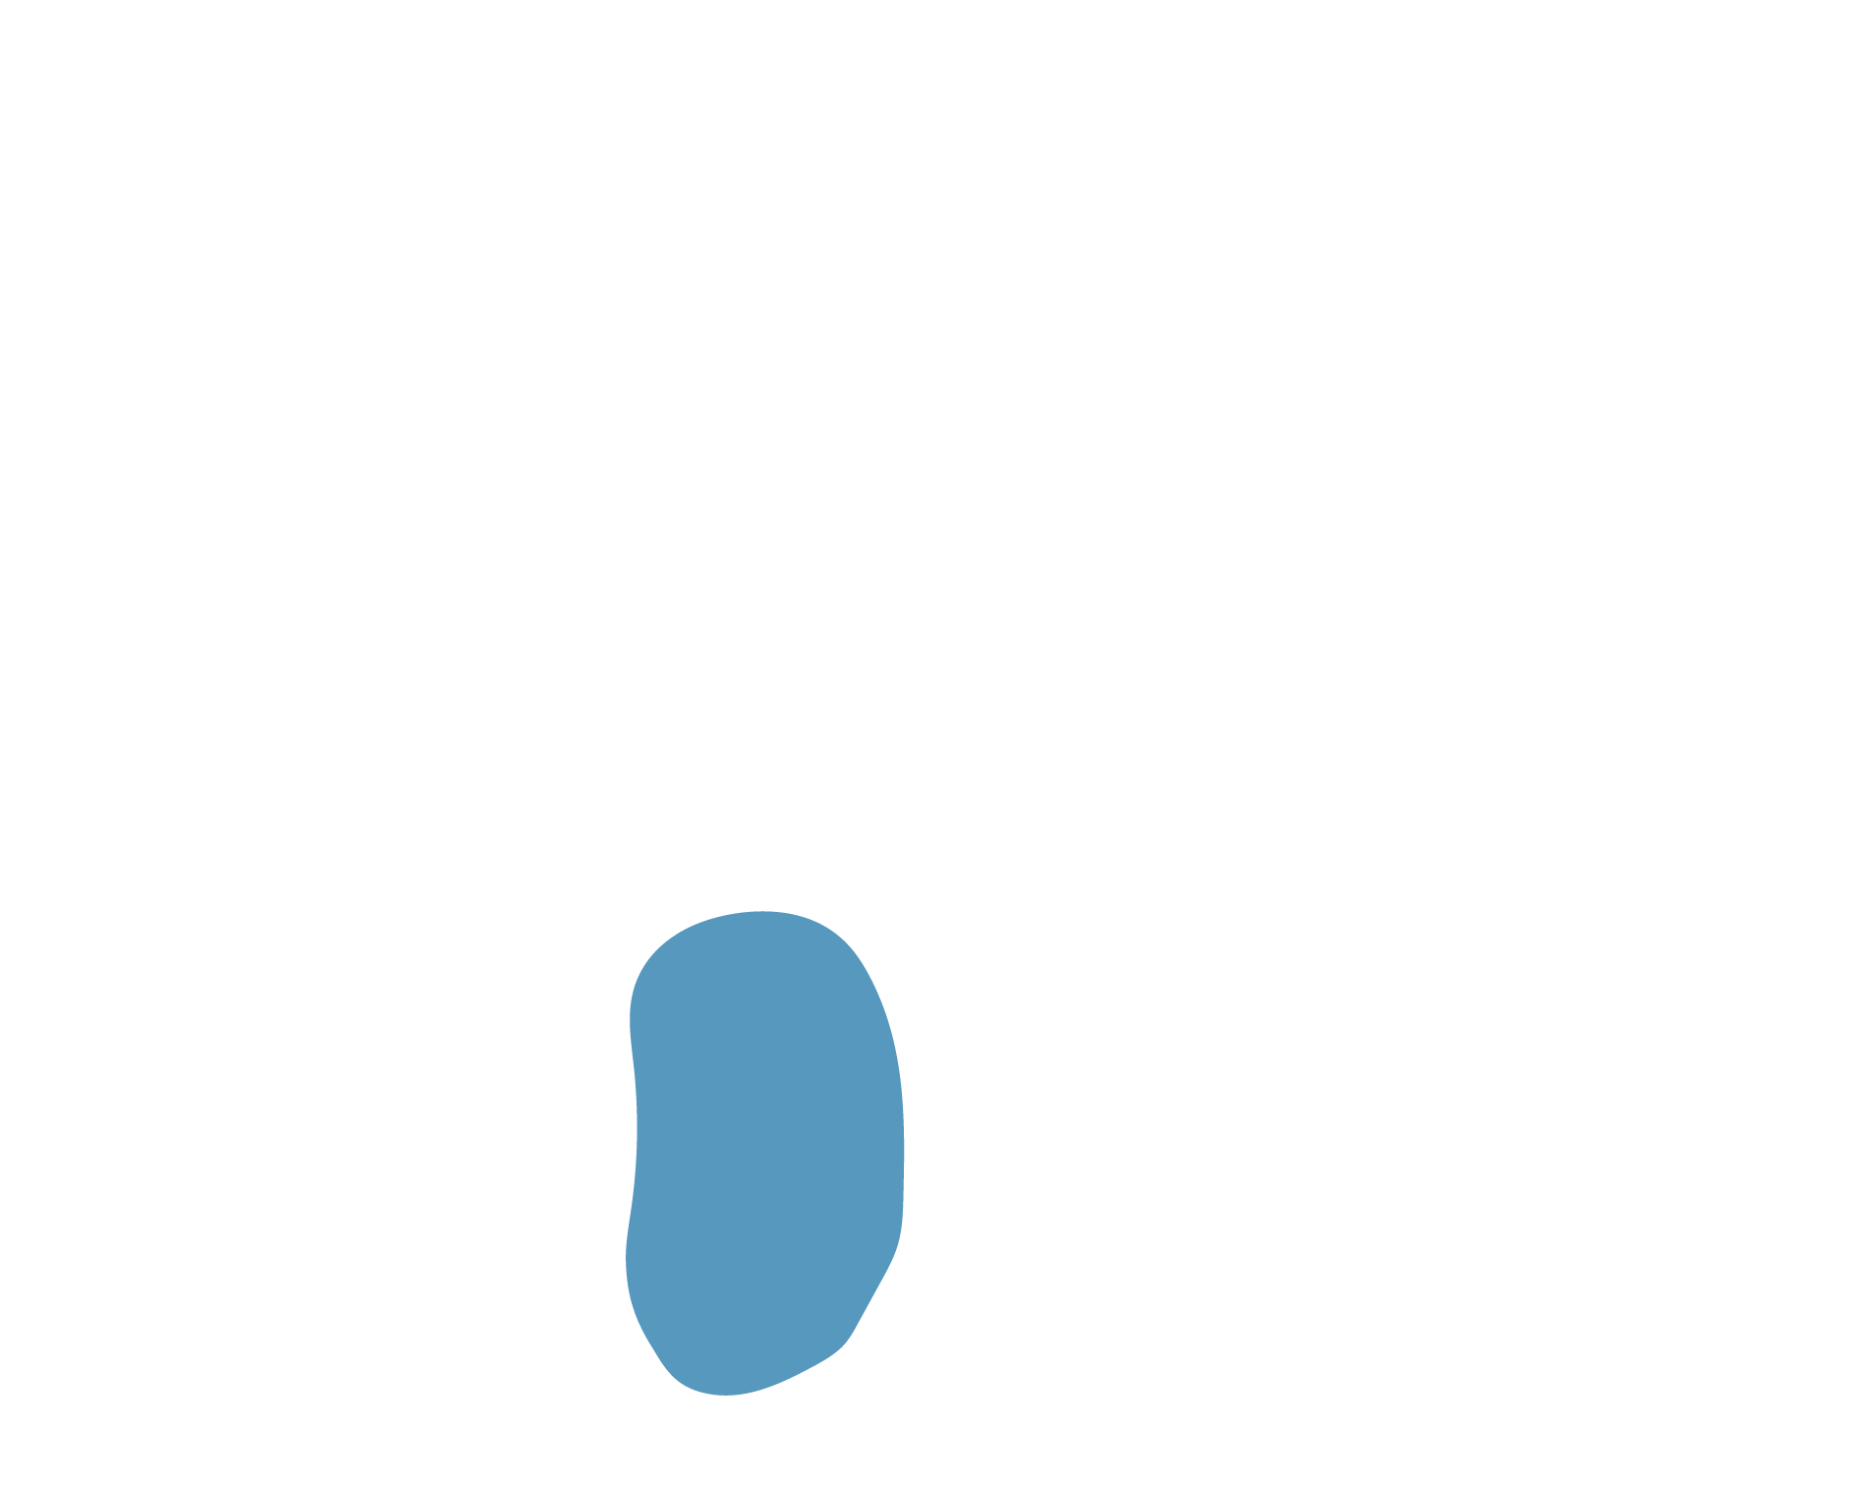 Floating Rock